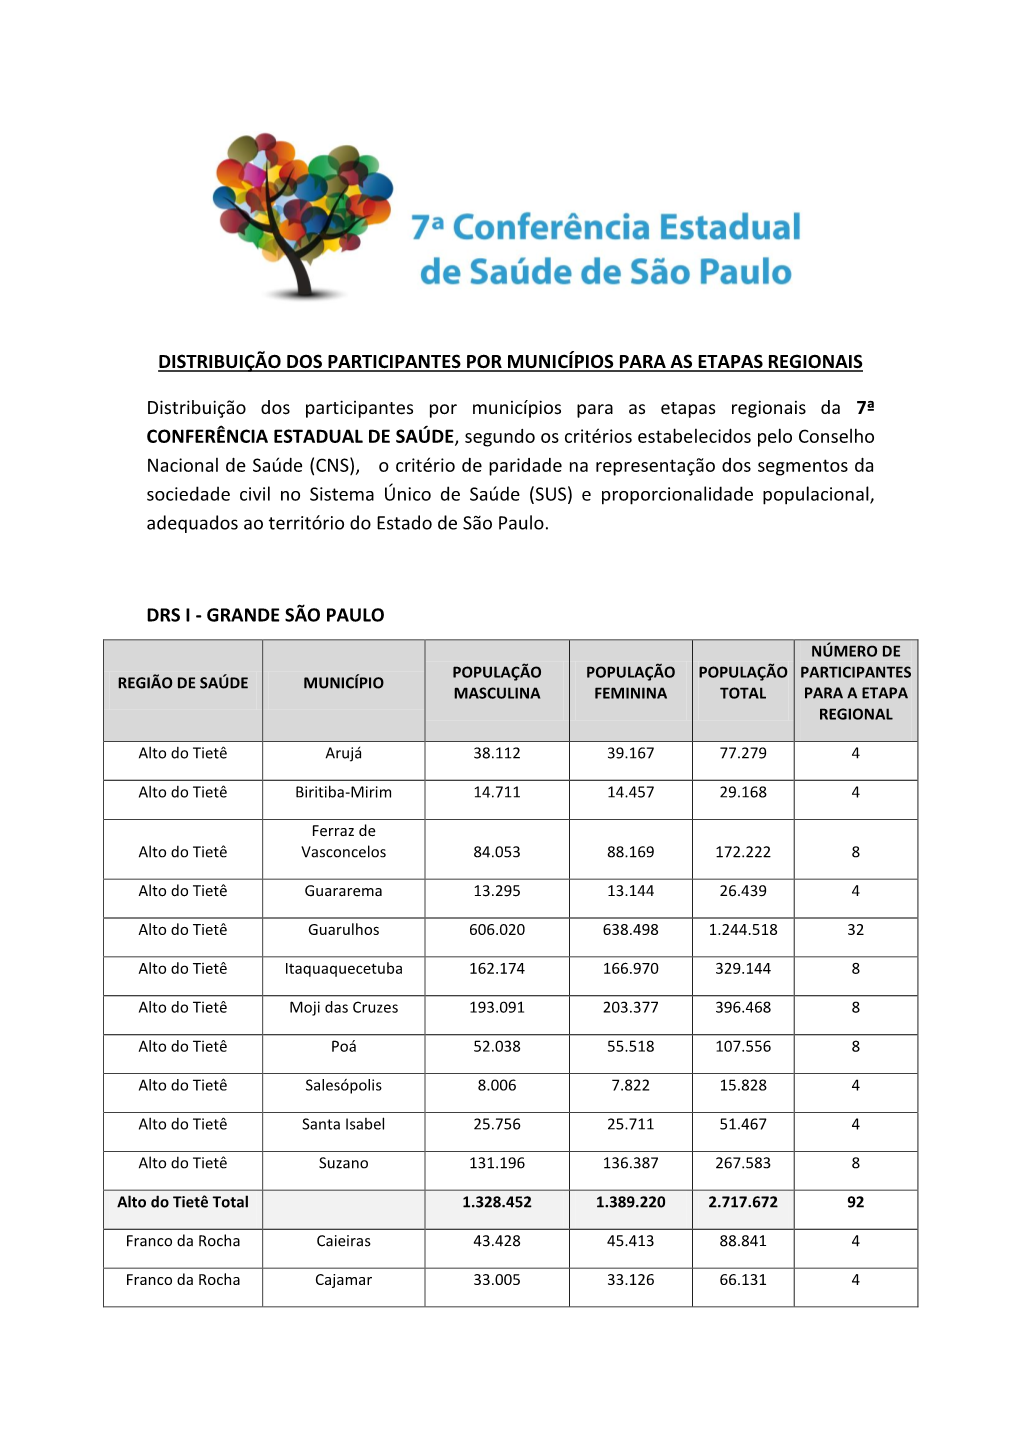 Drs I - Grande São Paulo